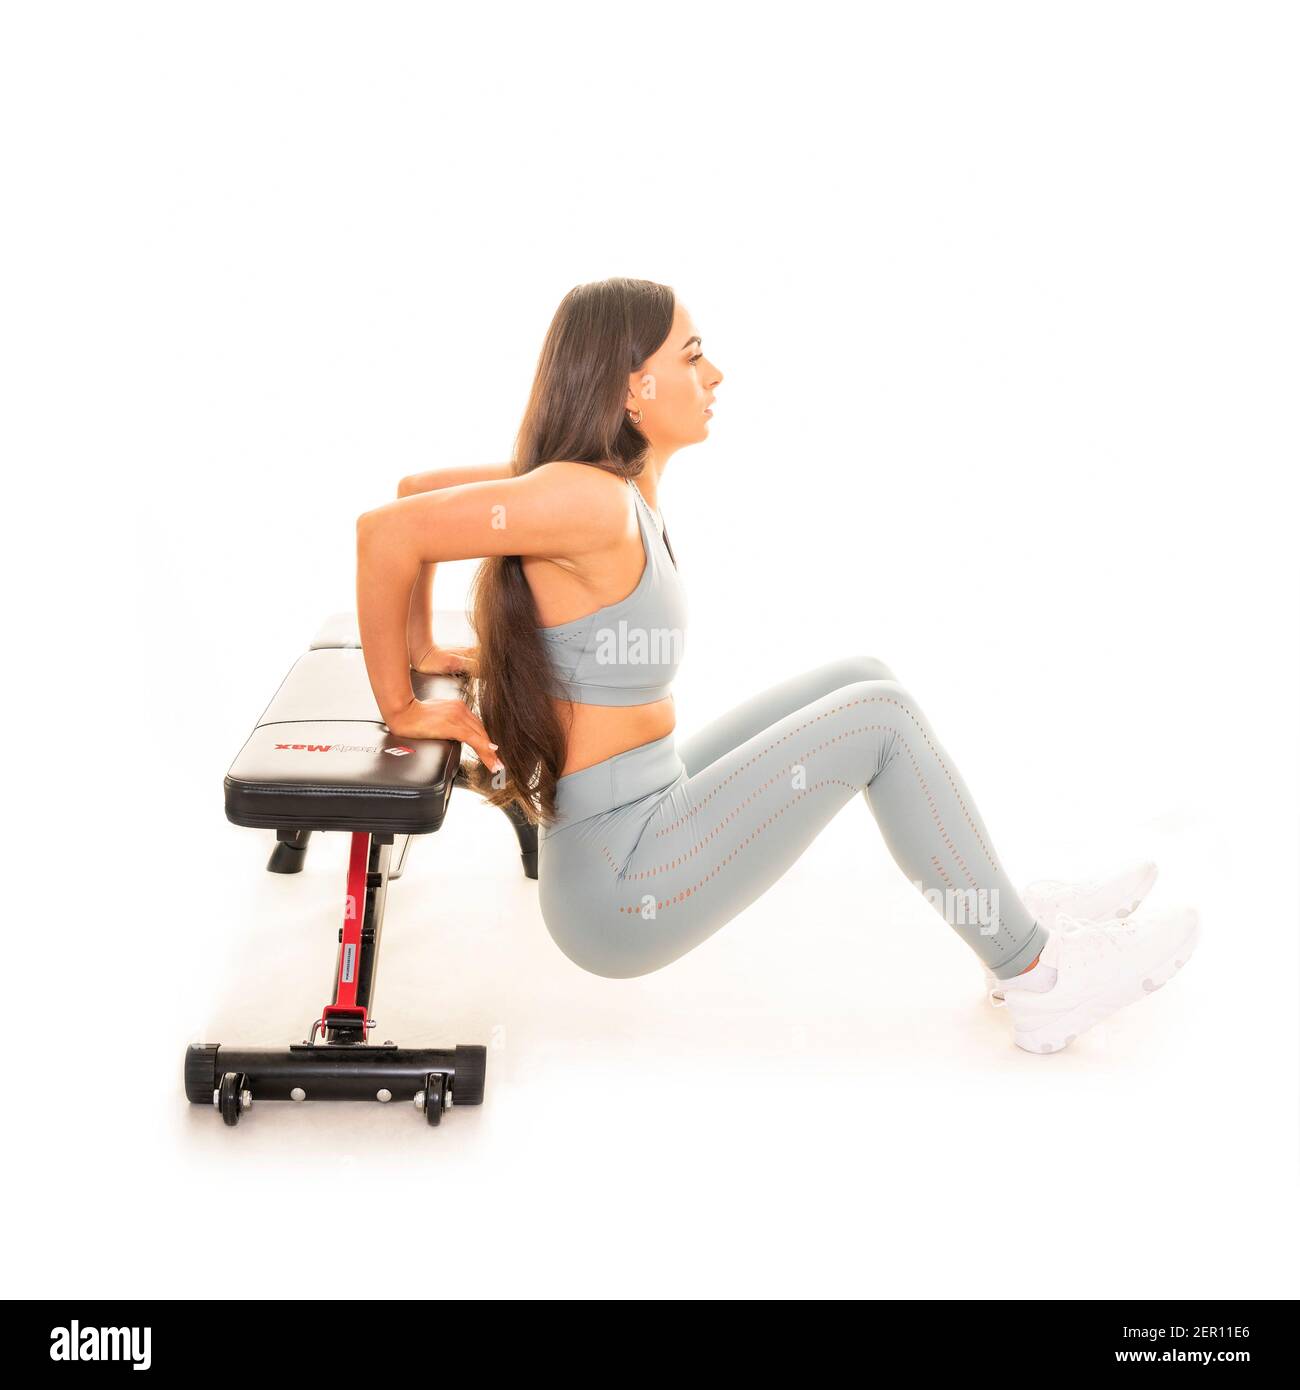 Retrato cuadrado de una mujer joven haciendo un descenso de tríceps usando un banco de gimnasio, aislado sobre un fondo blanco. Foto de stock